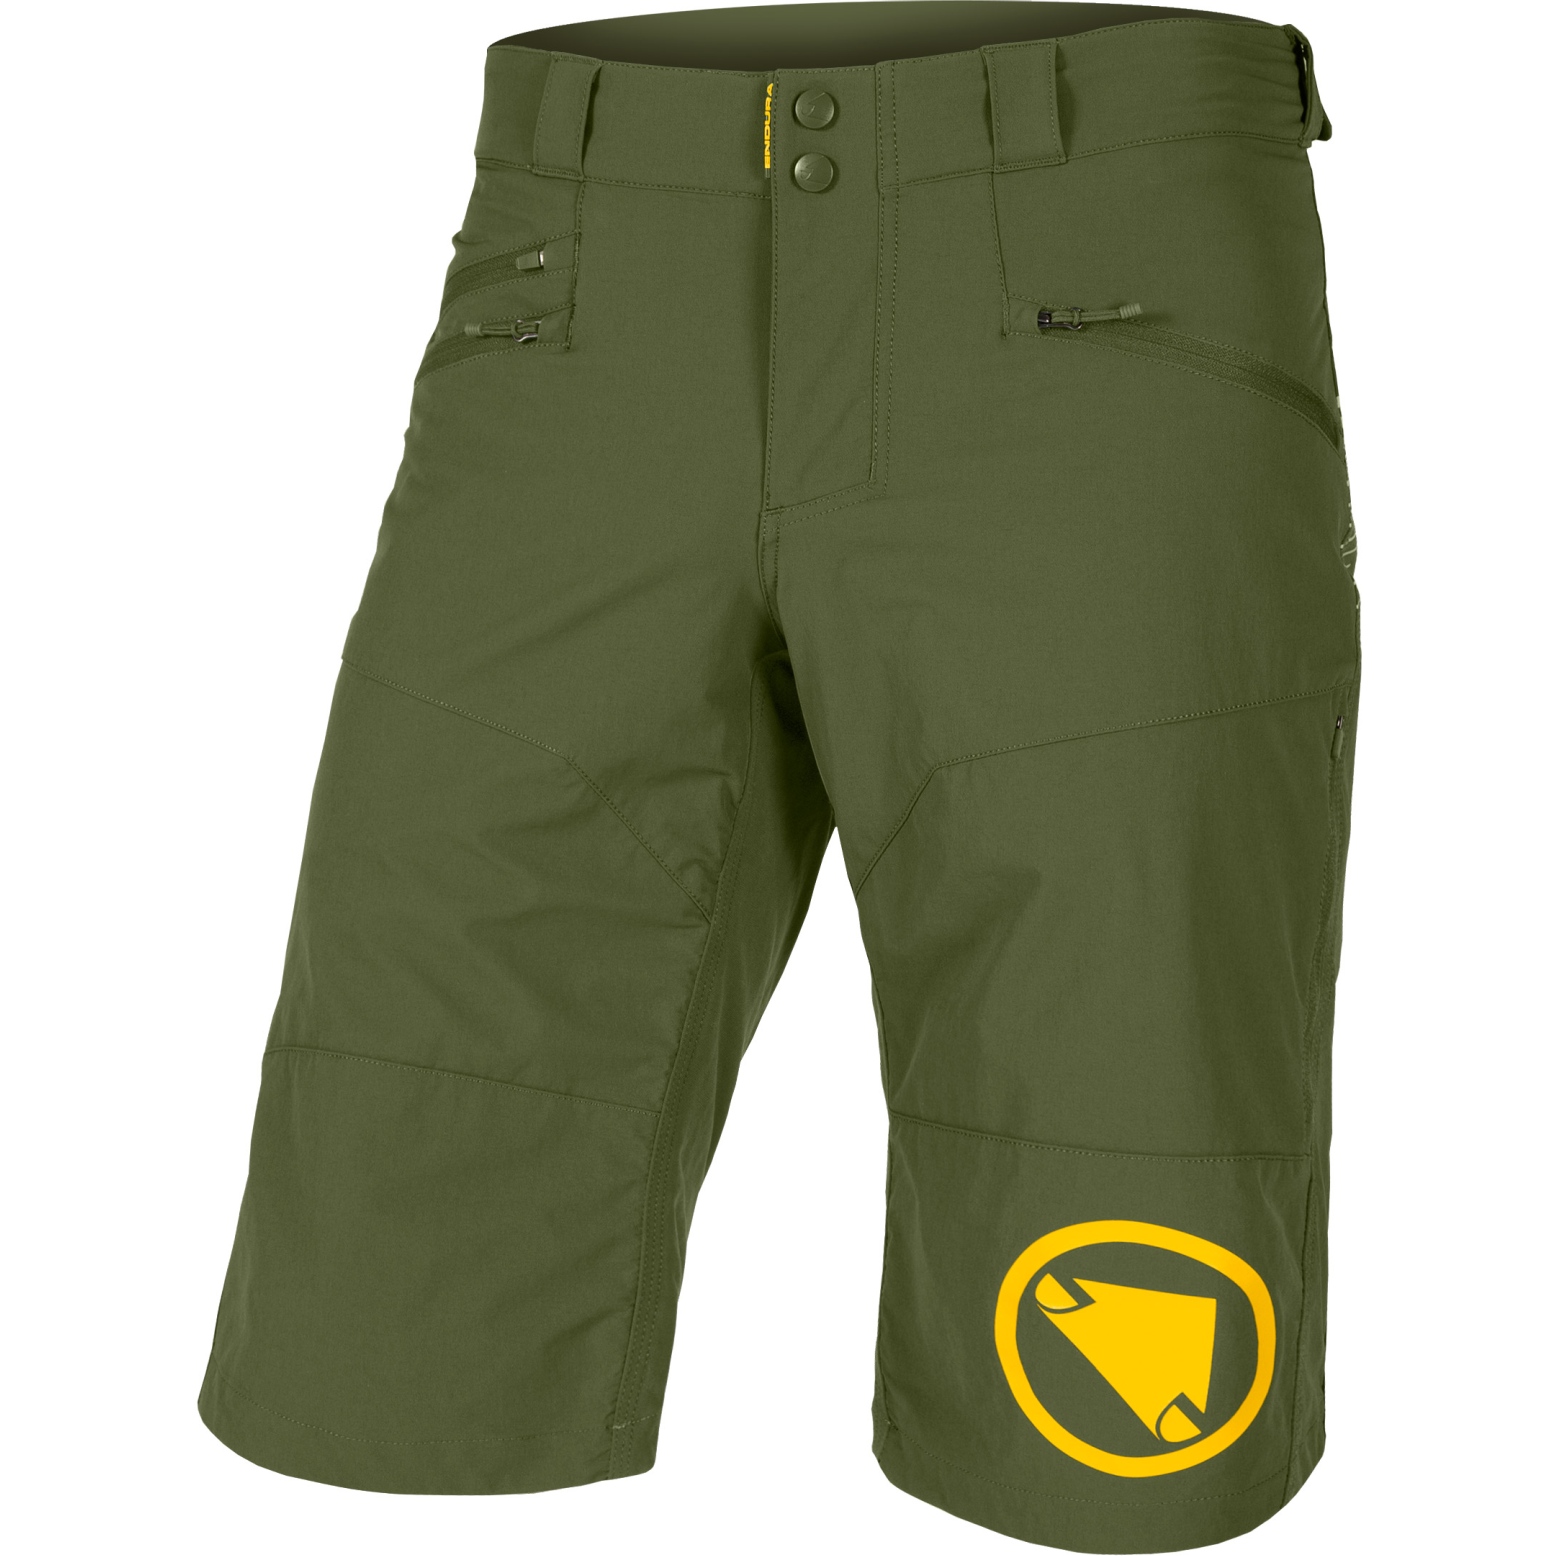 Productfoto van Endura SingleTrack II Shorts Heren - olive green